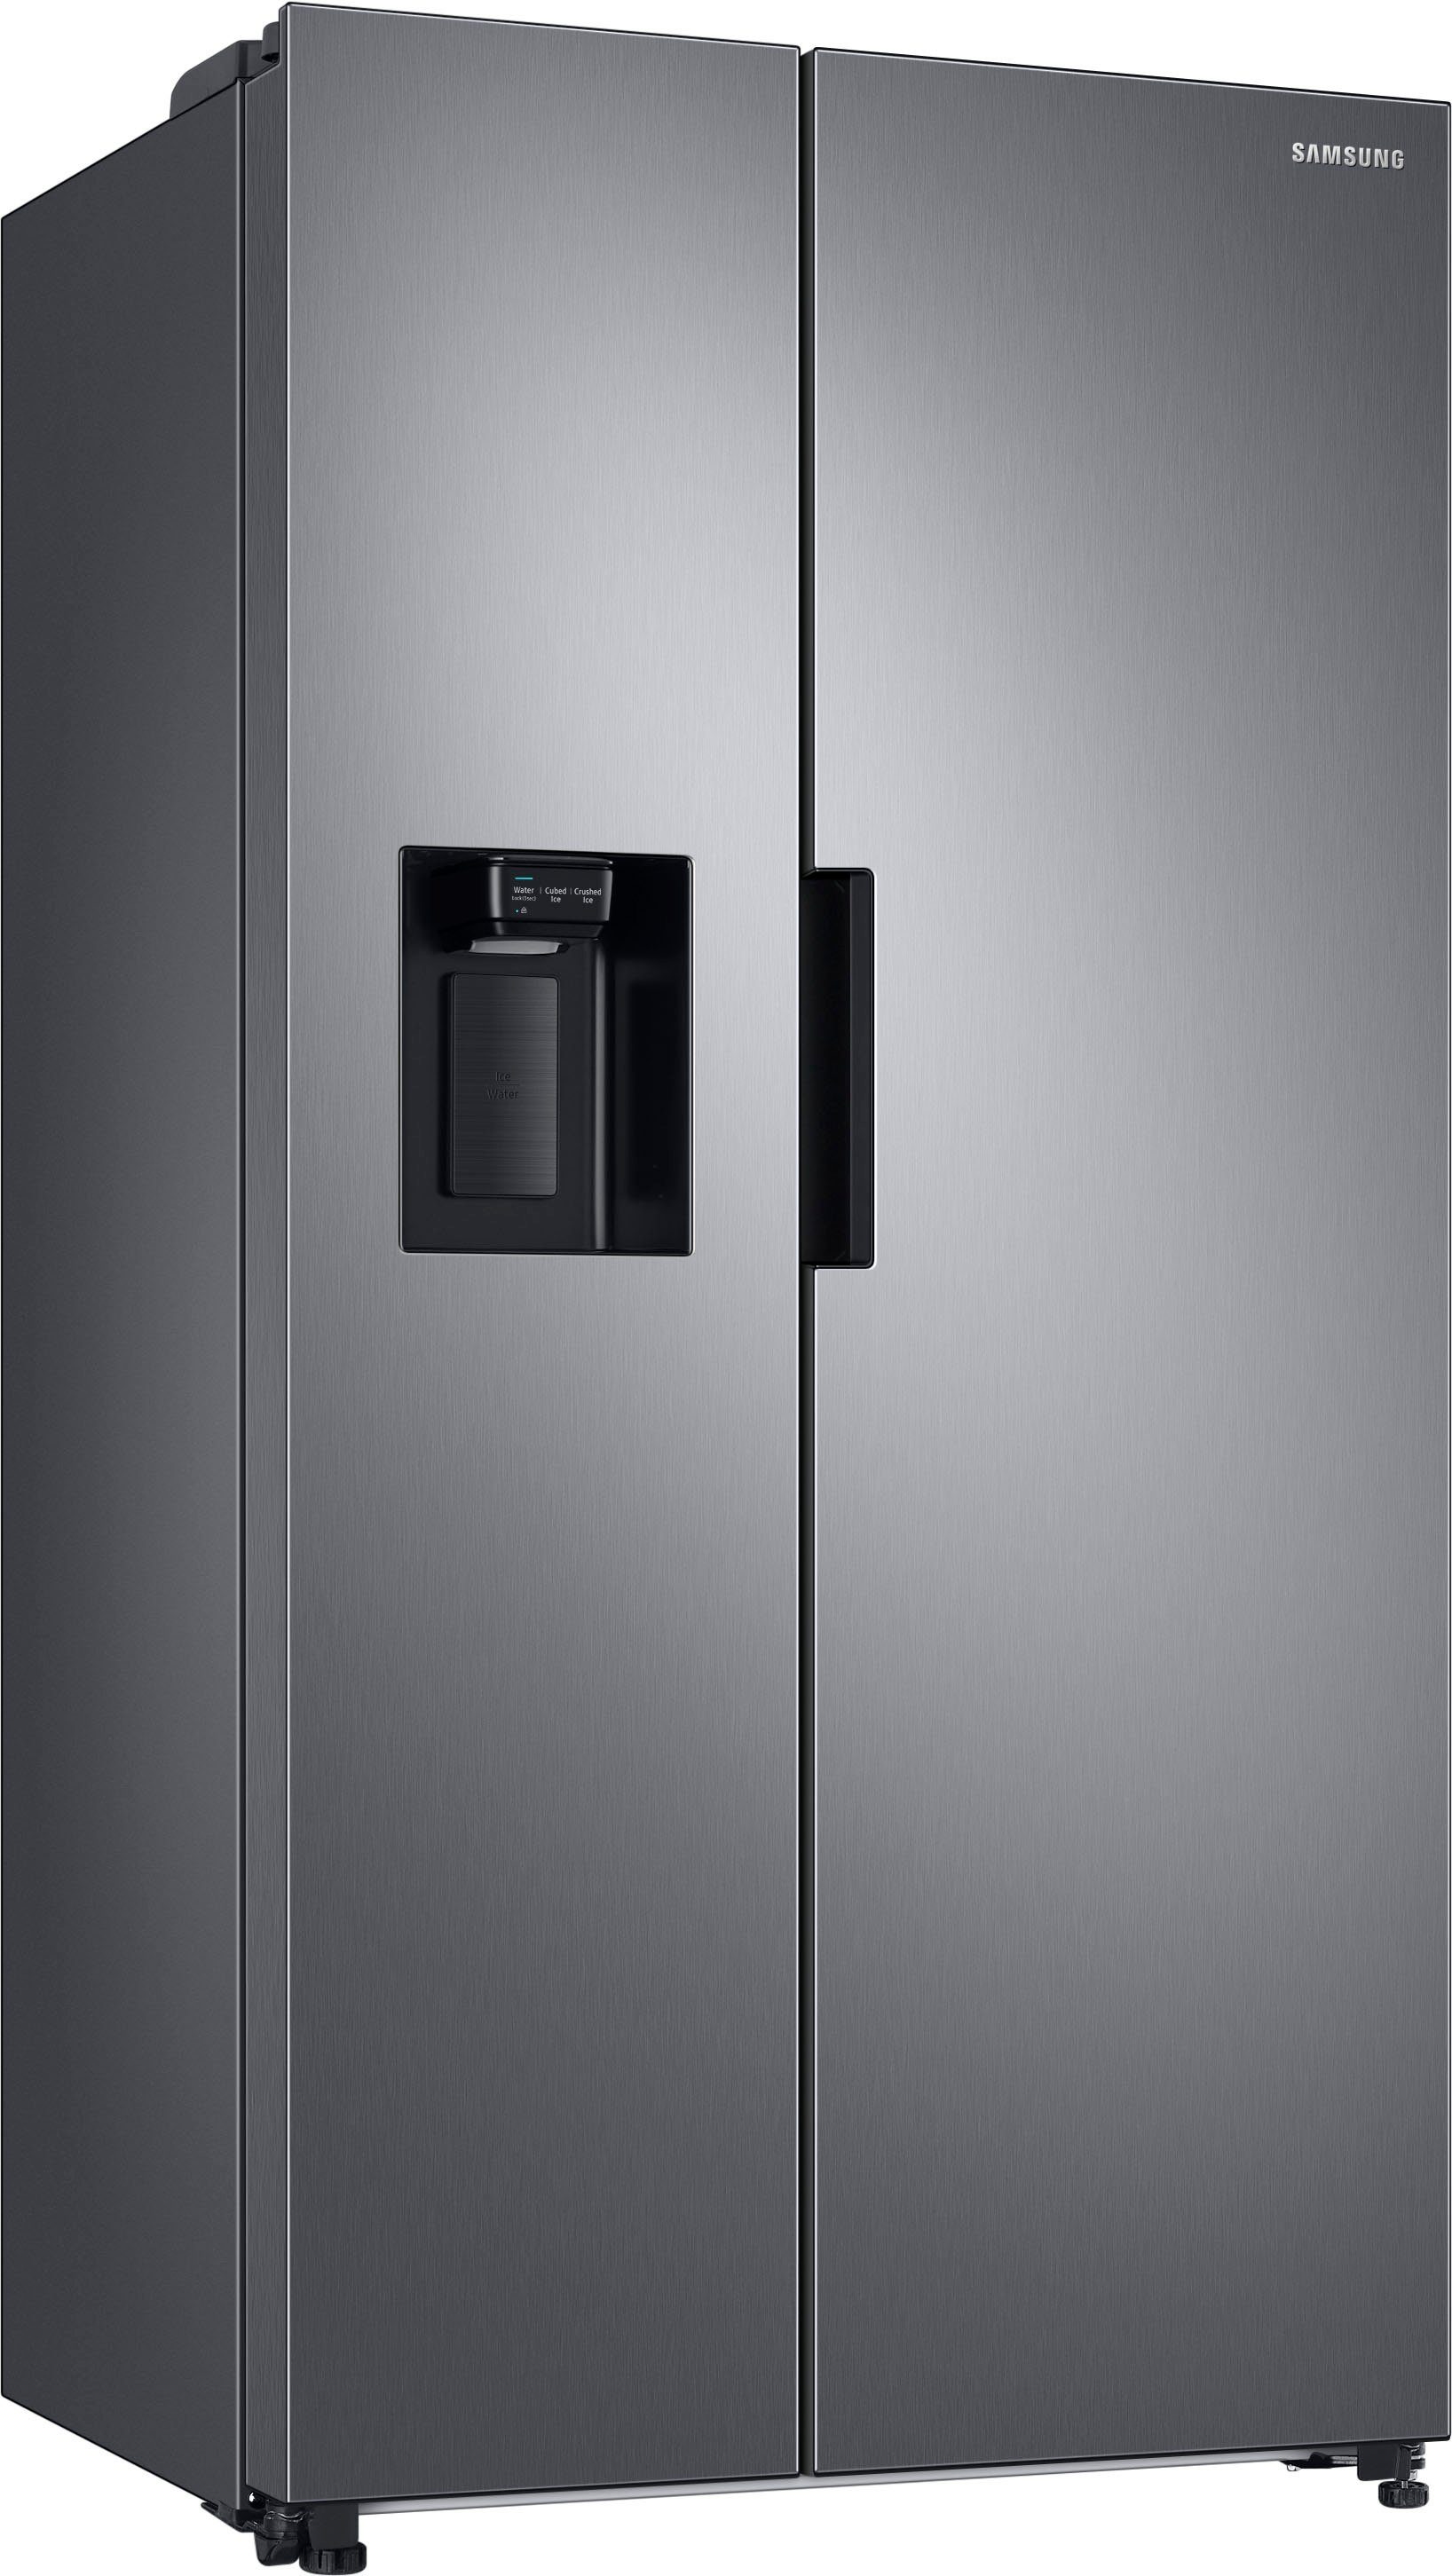 Samsung Side-by-Side RS6JA8811S9, 178 cm hoch, 91,2 cm breit, mit Festwasseranschluss edelstahlfarben | Side-by-Side Kühlschränke